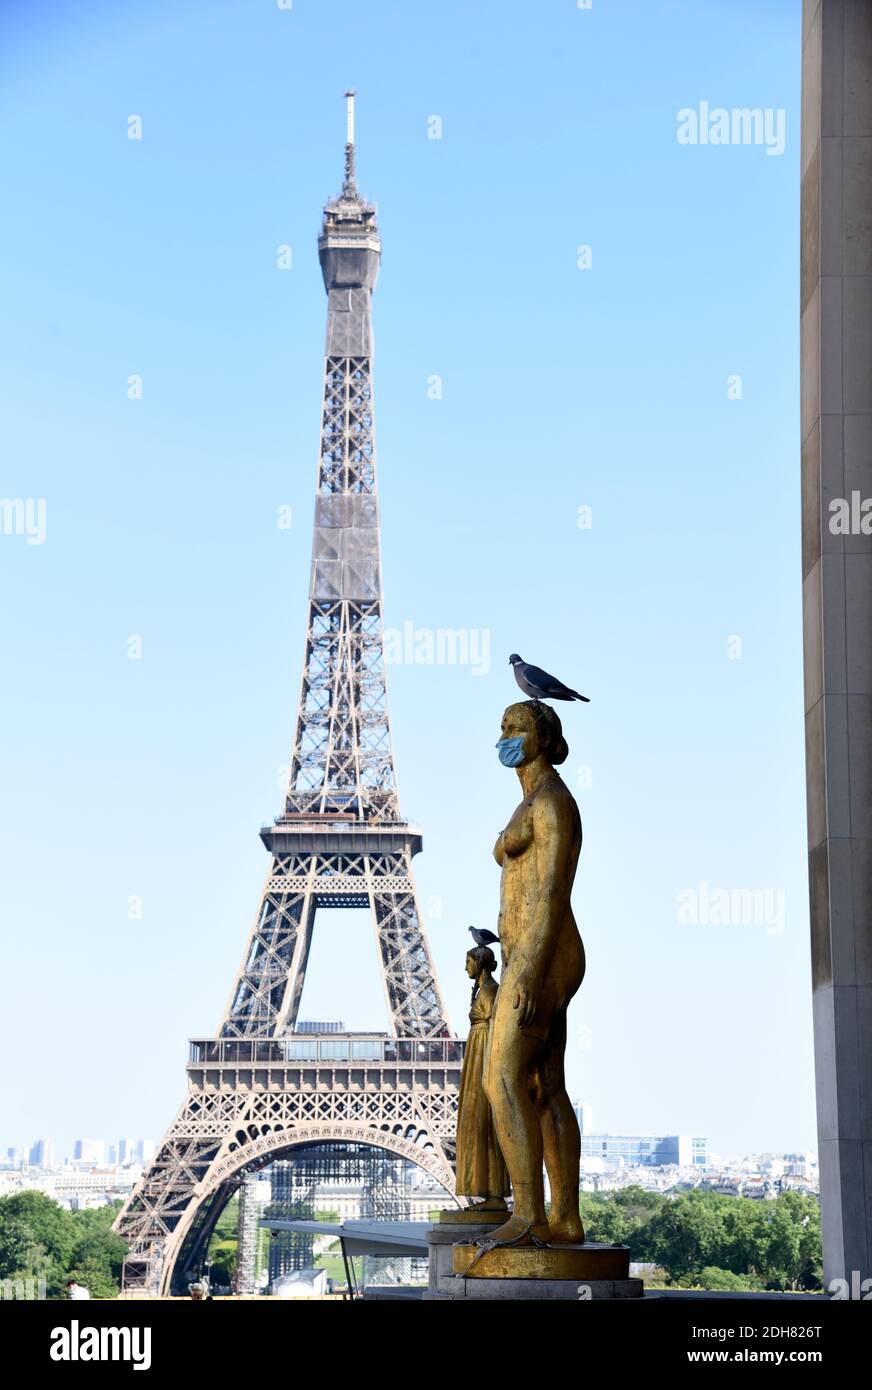 Parigi (Francia) il 17 maggio 2020: Statua in piazza 'Place du Trocadero' con una maschera protettiva contro Coronavirus, Covid19, e la Torre Eiffel nel Foto Stock